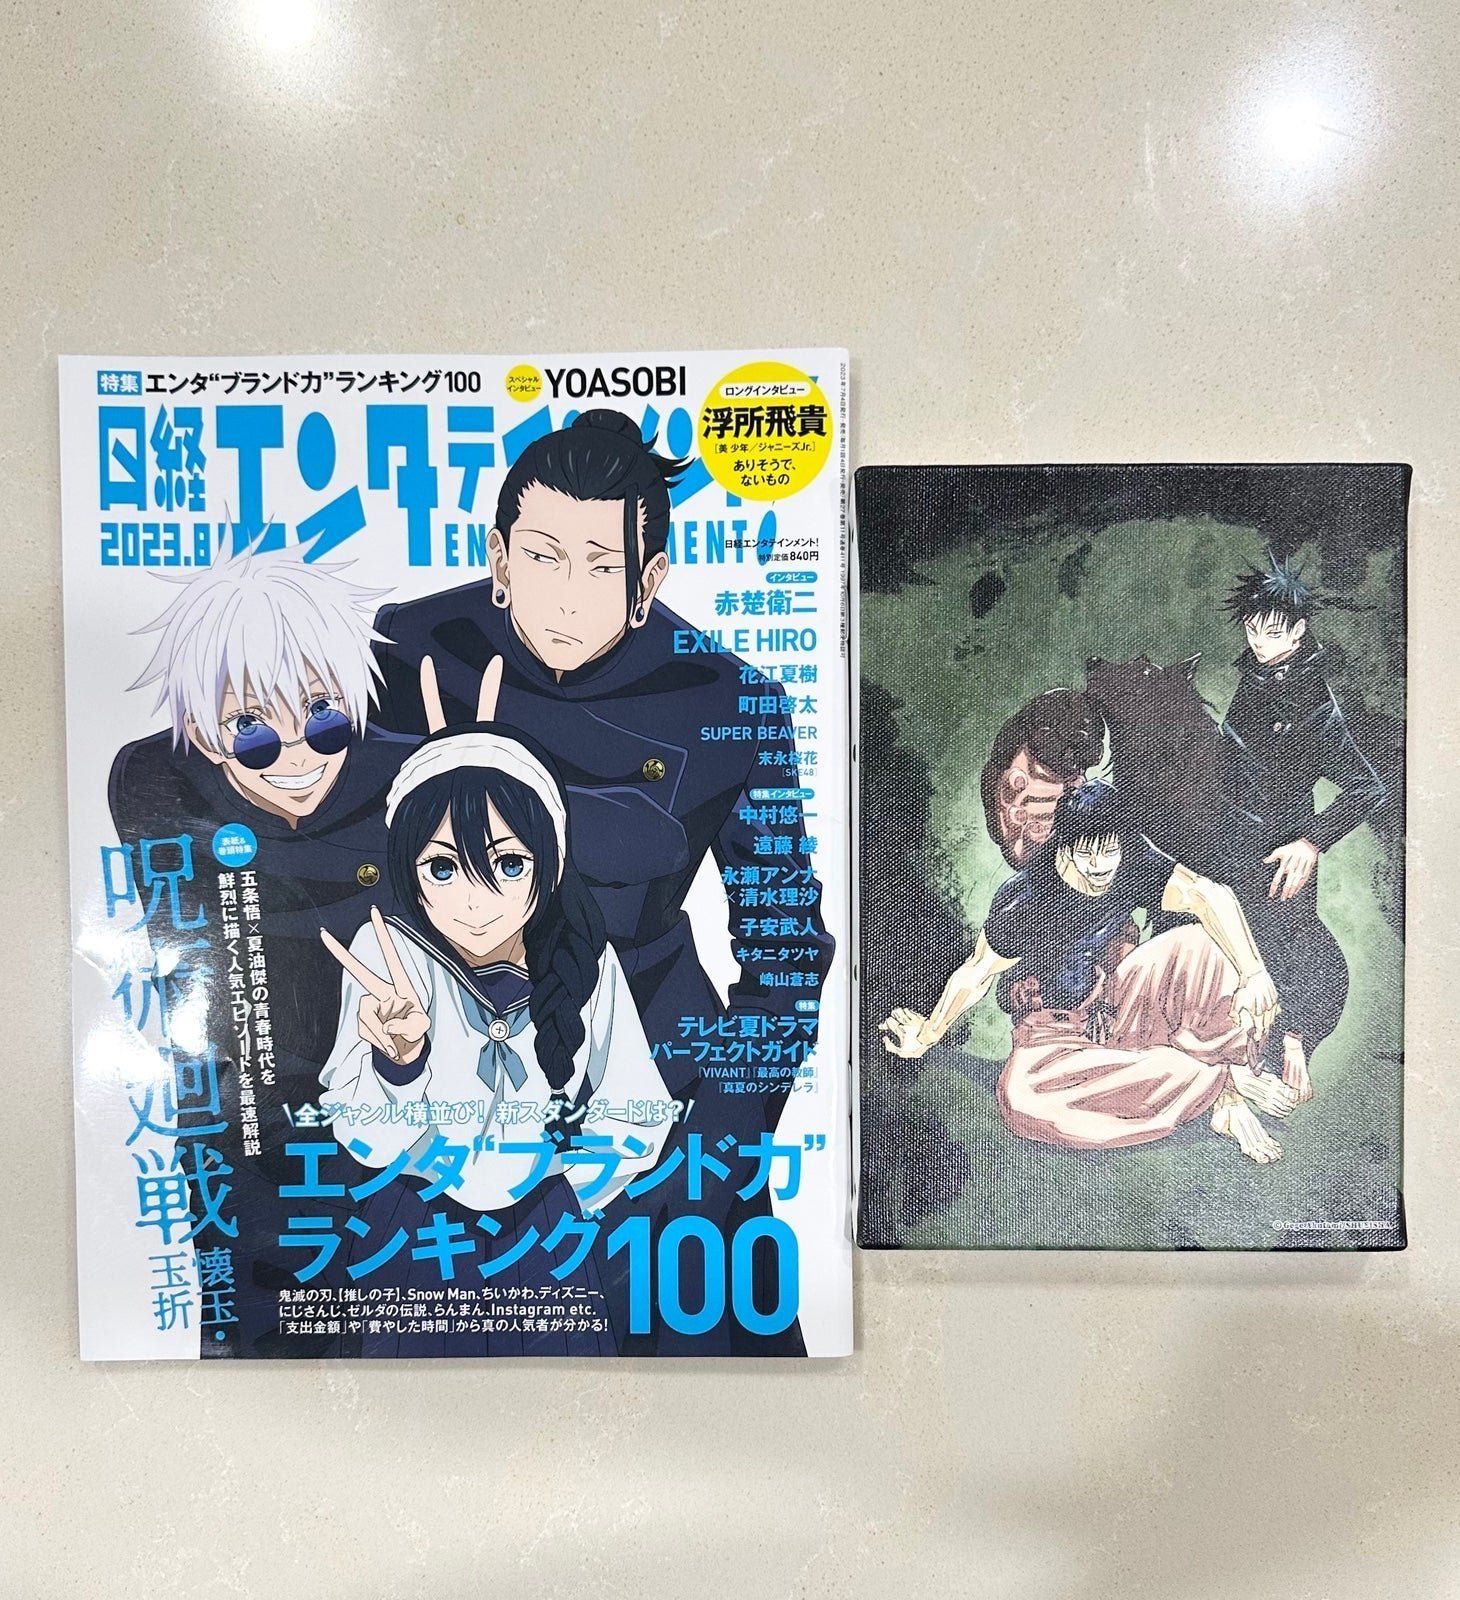 Jujutsu Kaisen Magazine ( Gojo Geto Riko ) + Toji and Megumi Art Board Canvas kC1QFW2jm